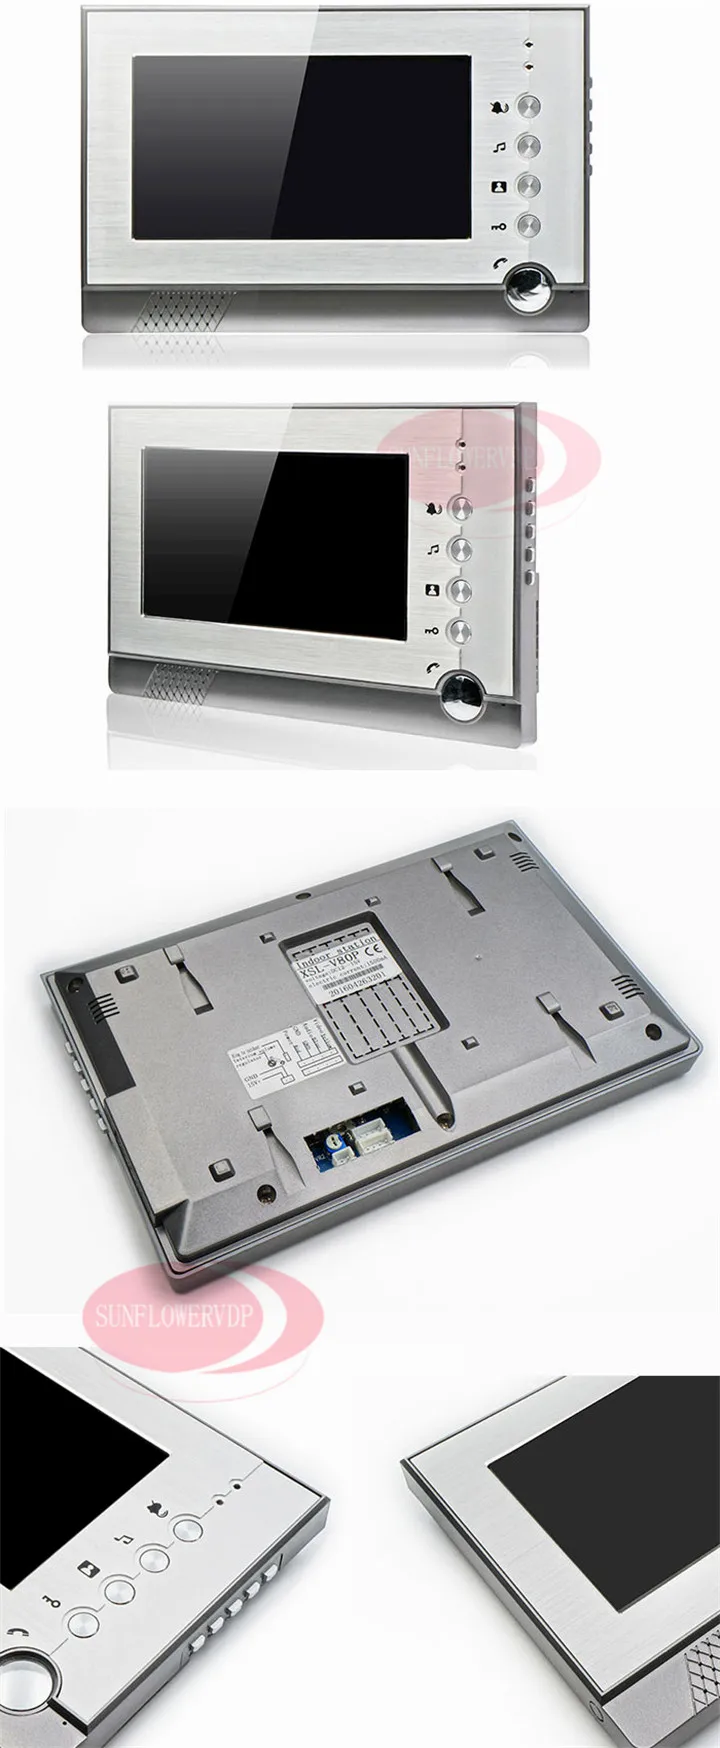 7 дюймов домашний видео домофон + SD карта видеодомофон с записью 12 мониторов система внутренней связи клавиатура система контроля доступа